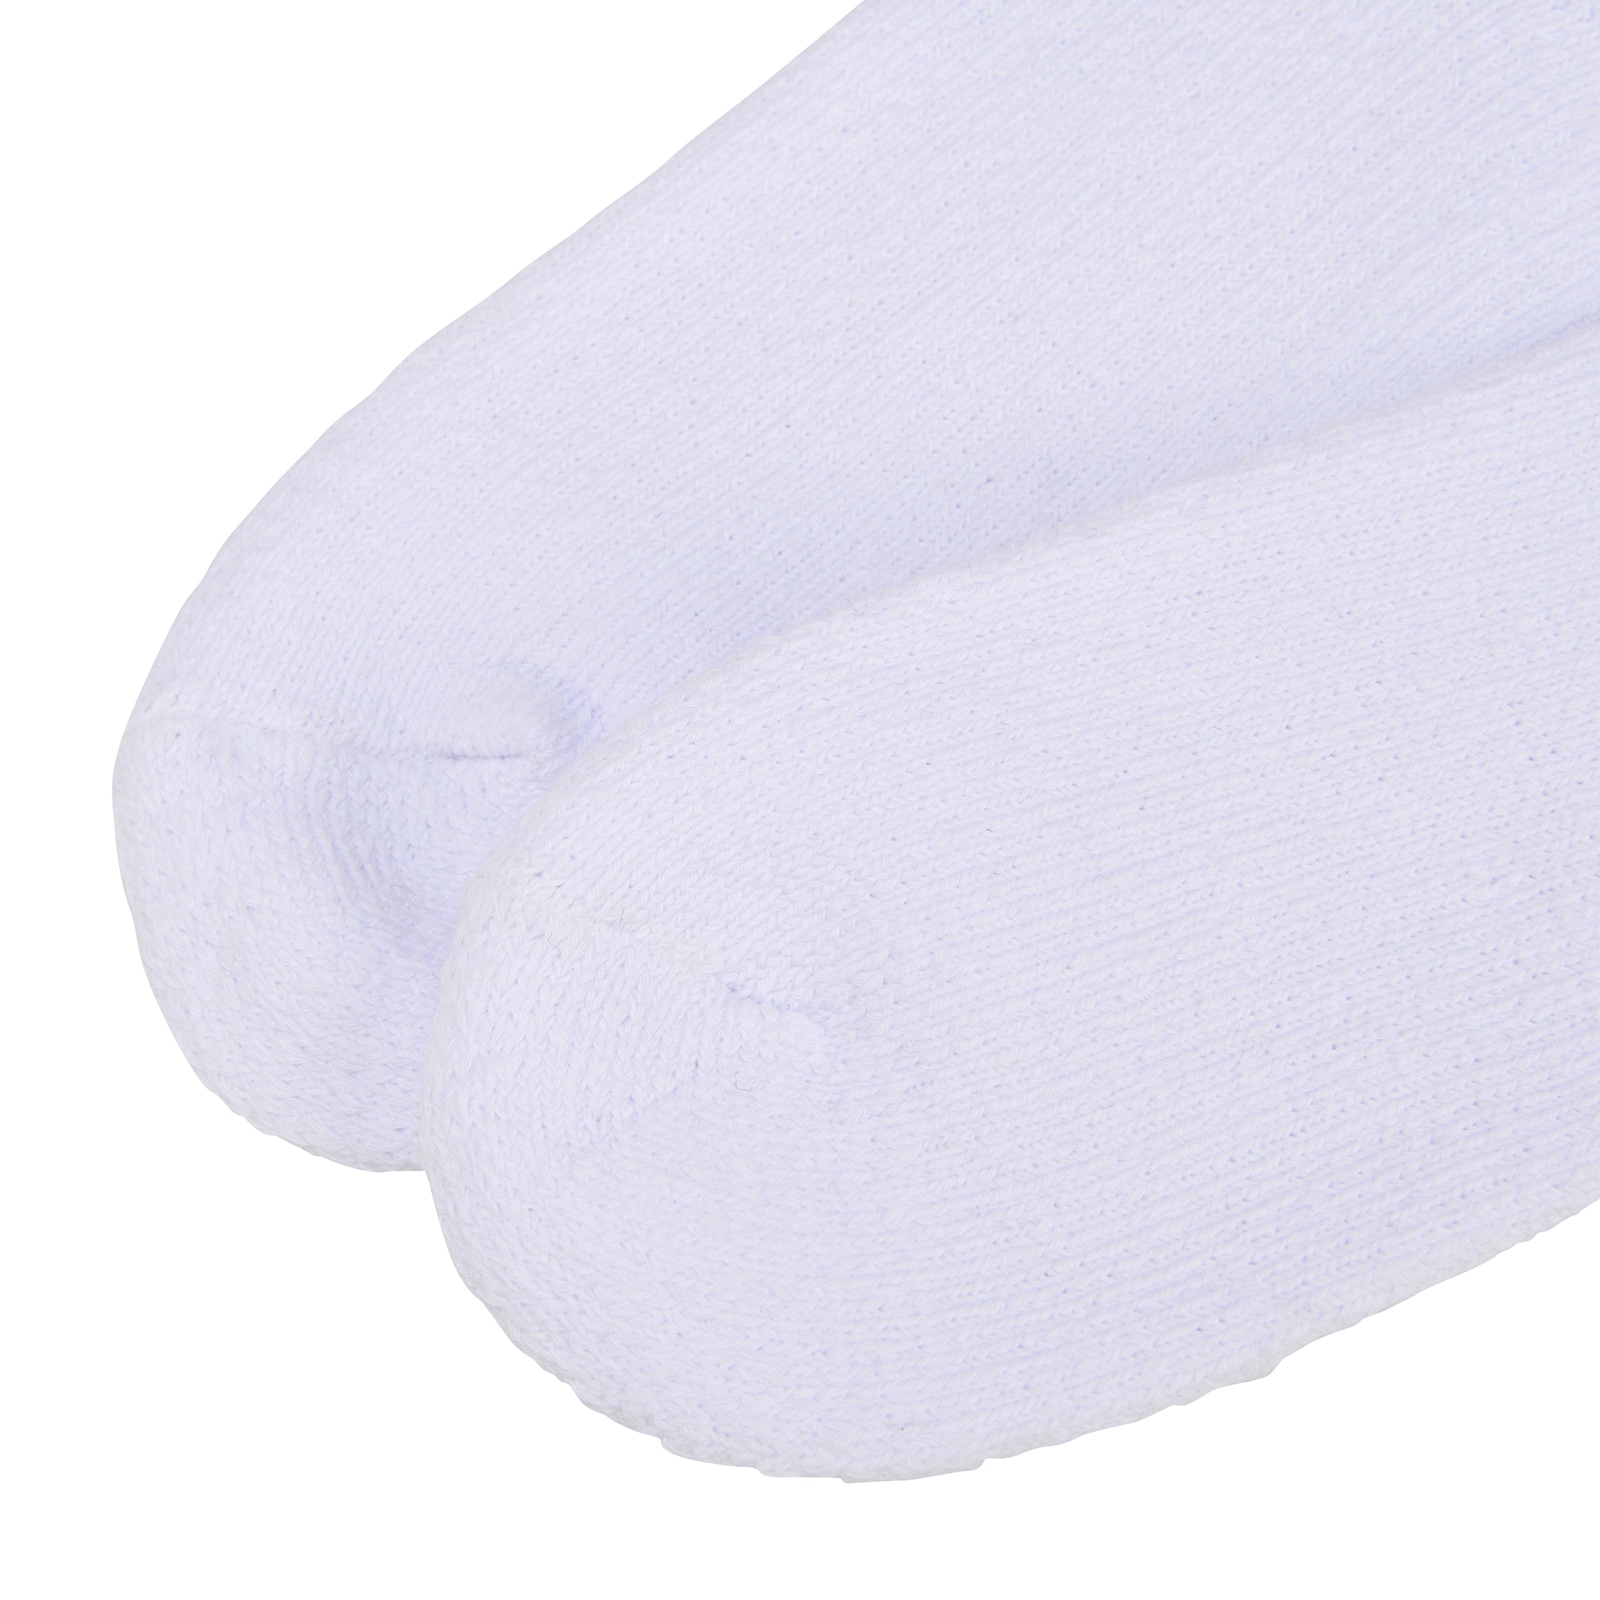 Comfort Mid Socks